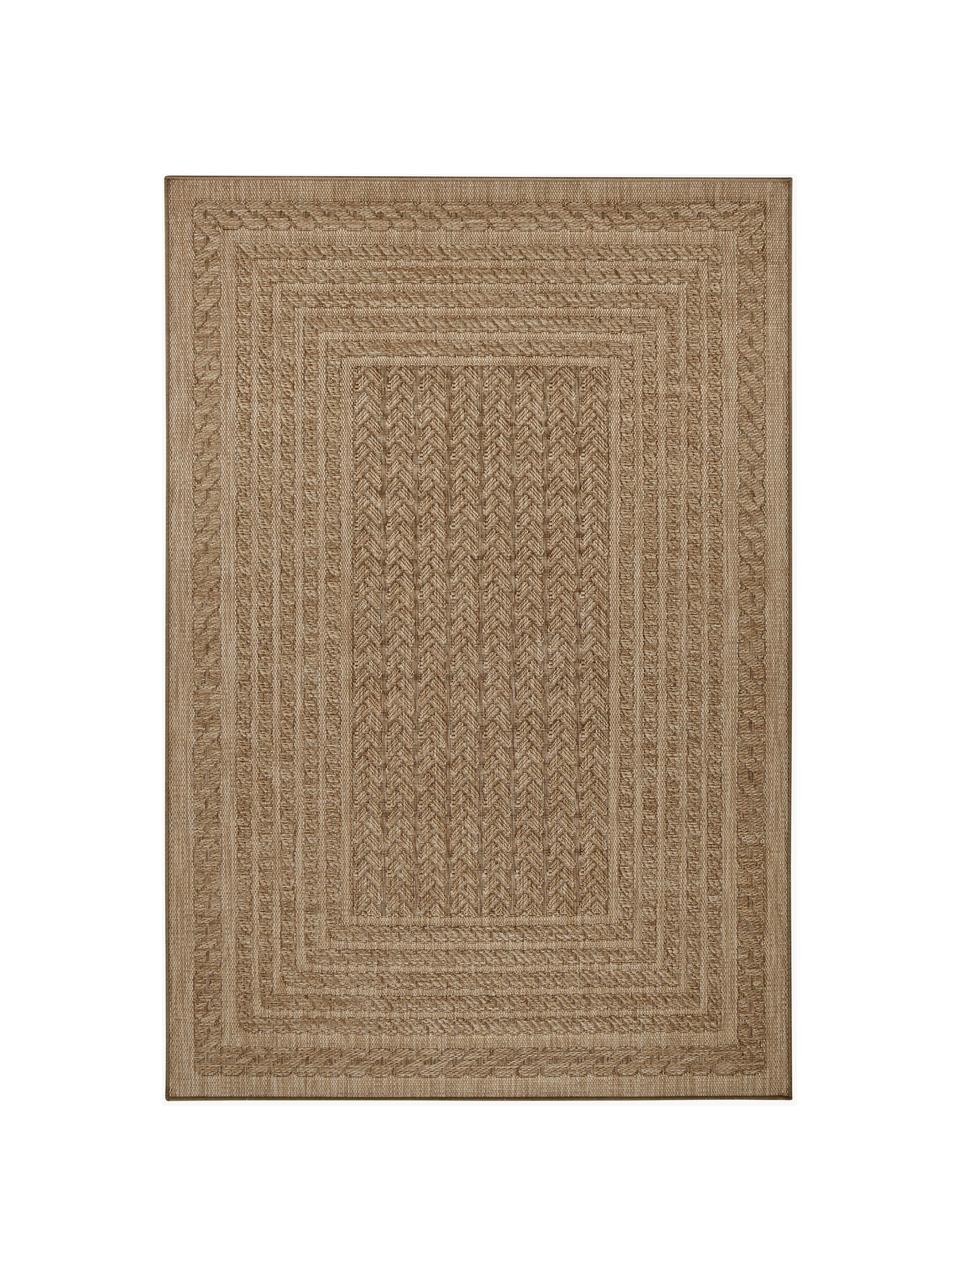 Vnitřní a venkovní koberec v jutovém vzhledu Limonero, 100 % polypropylen, Béžová, Š 80 cm, D 150 cm (velikost XS)